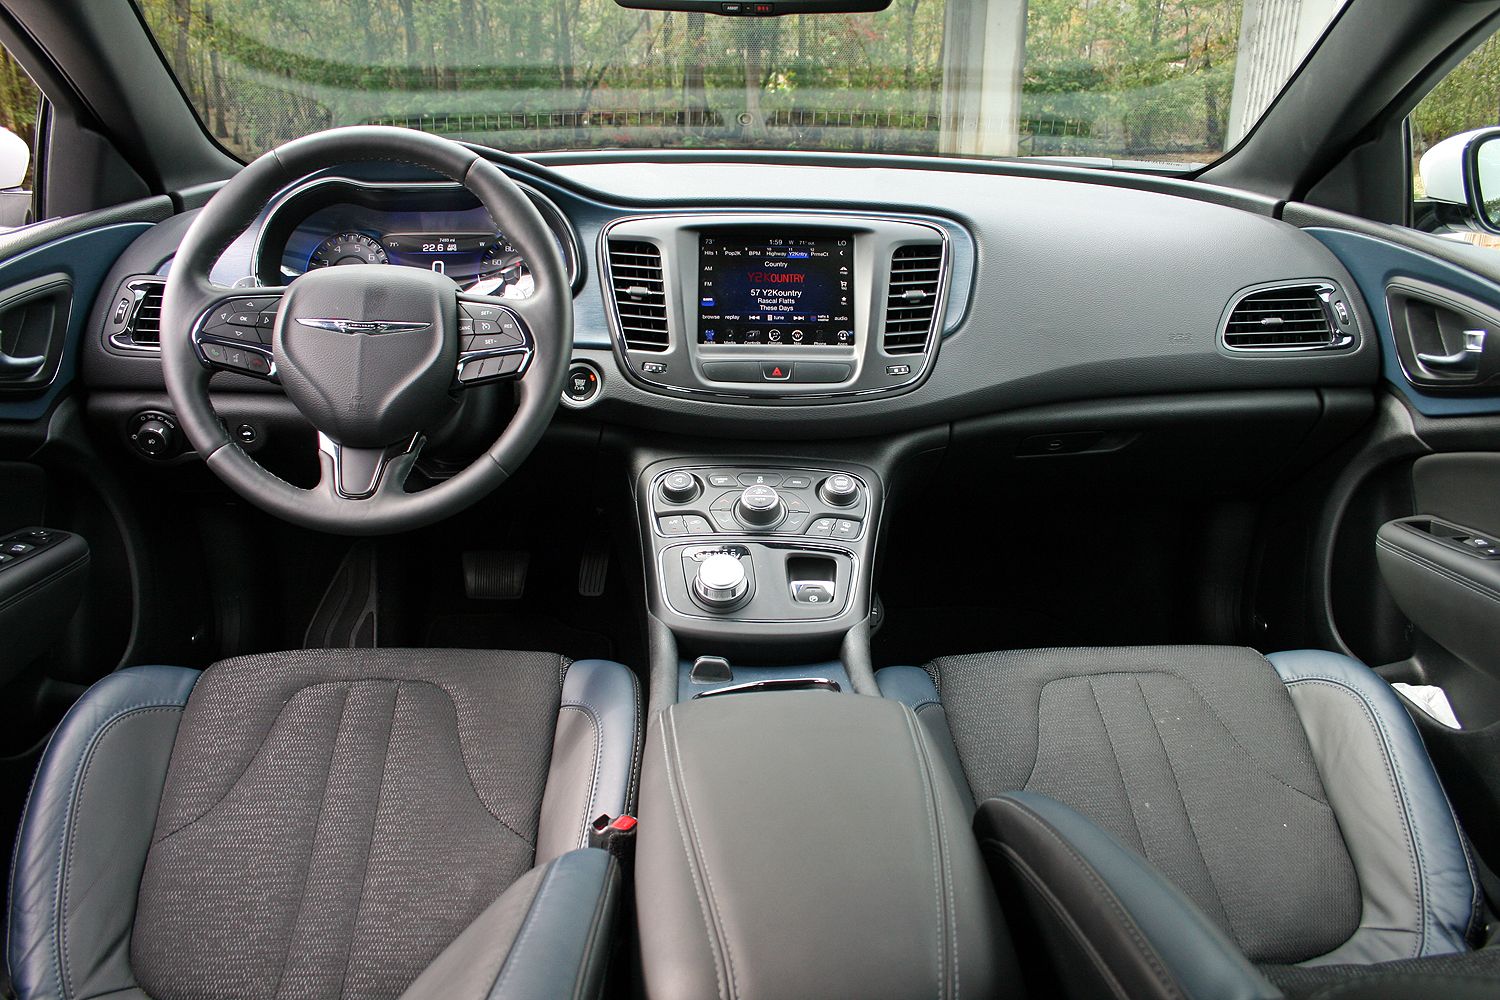 2015 Chrysler 200 S - Driven